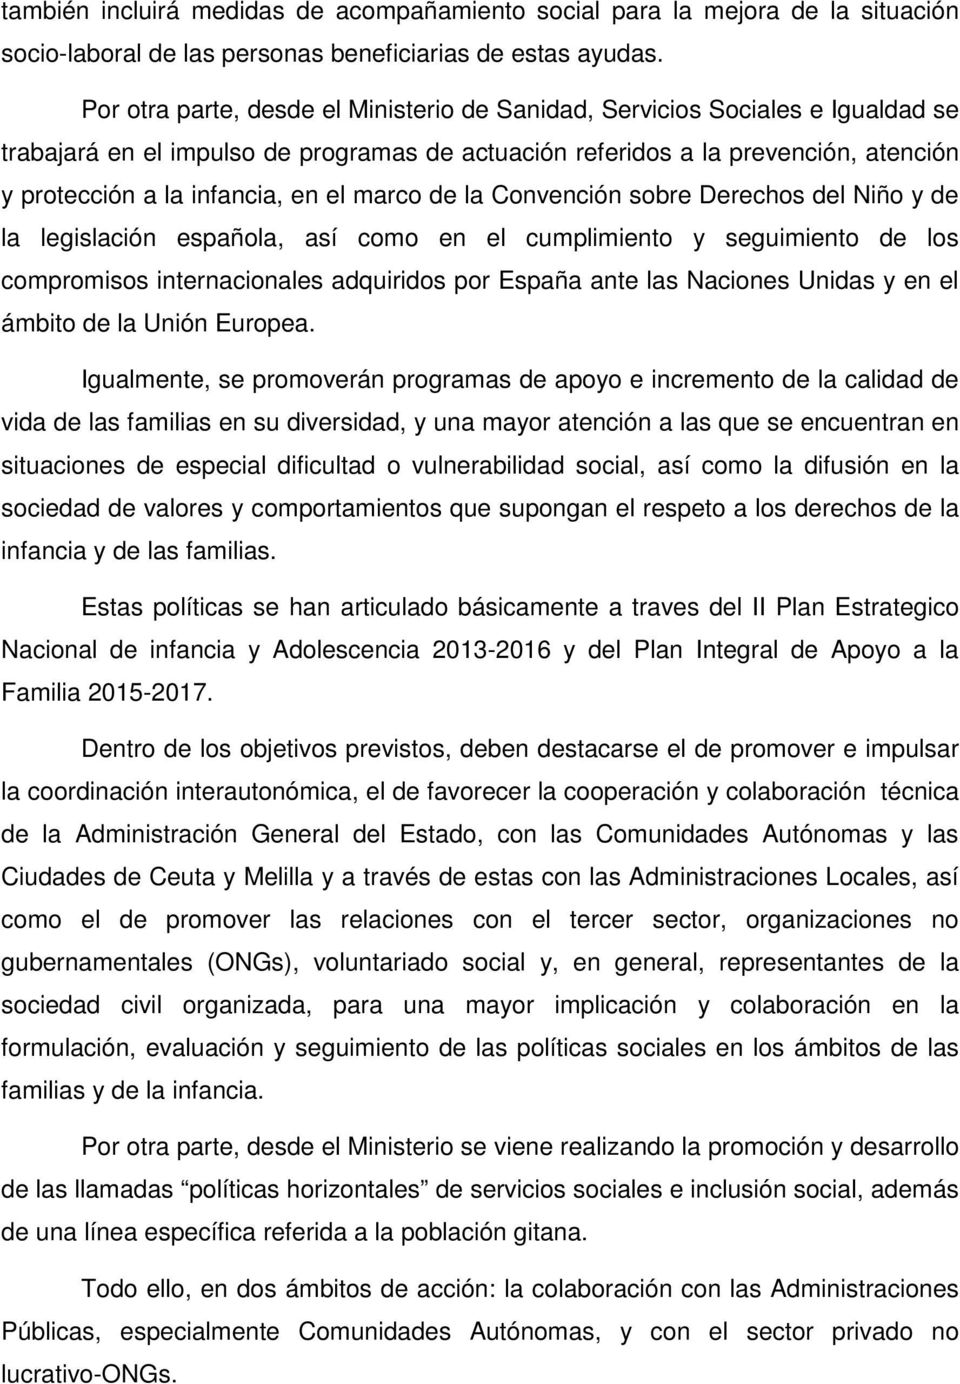 el marco de la Convención sobre Derechos del Niño y de la legislación española, así como en el cumplimiento y seguimiento de los compromisos internacionales adquiridos por España ante las Naciones